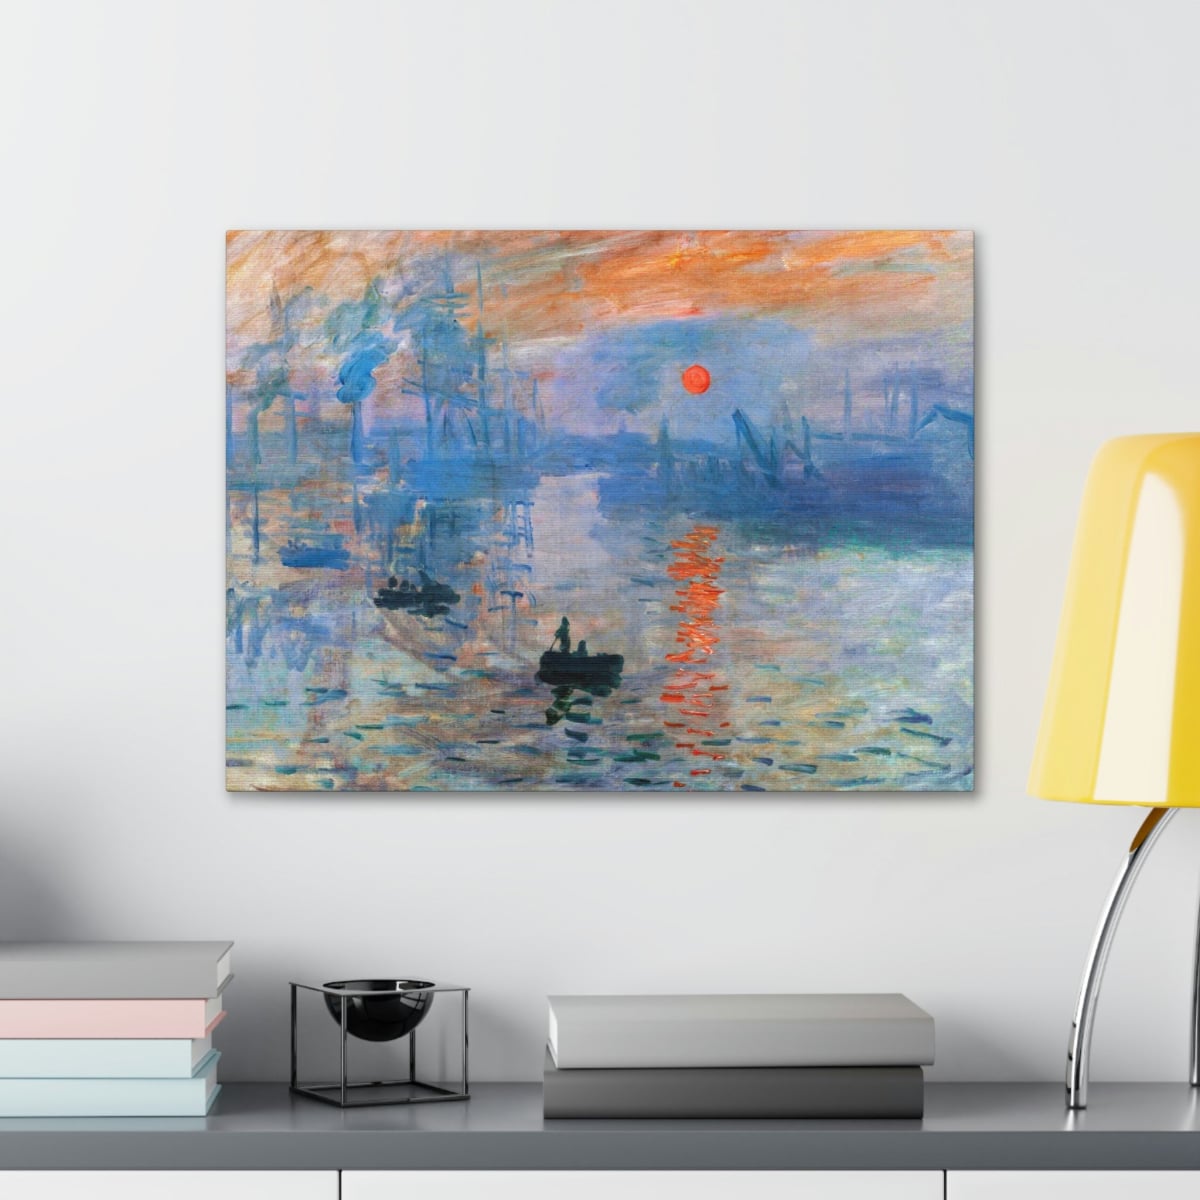 Impression Sunrise by Claude Monet Art Canvas Gallery Wraps